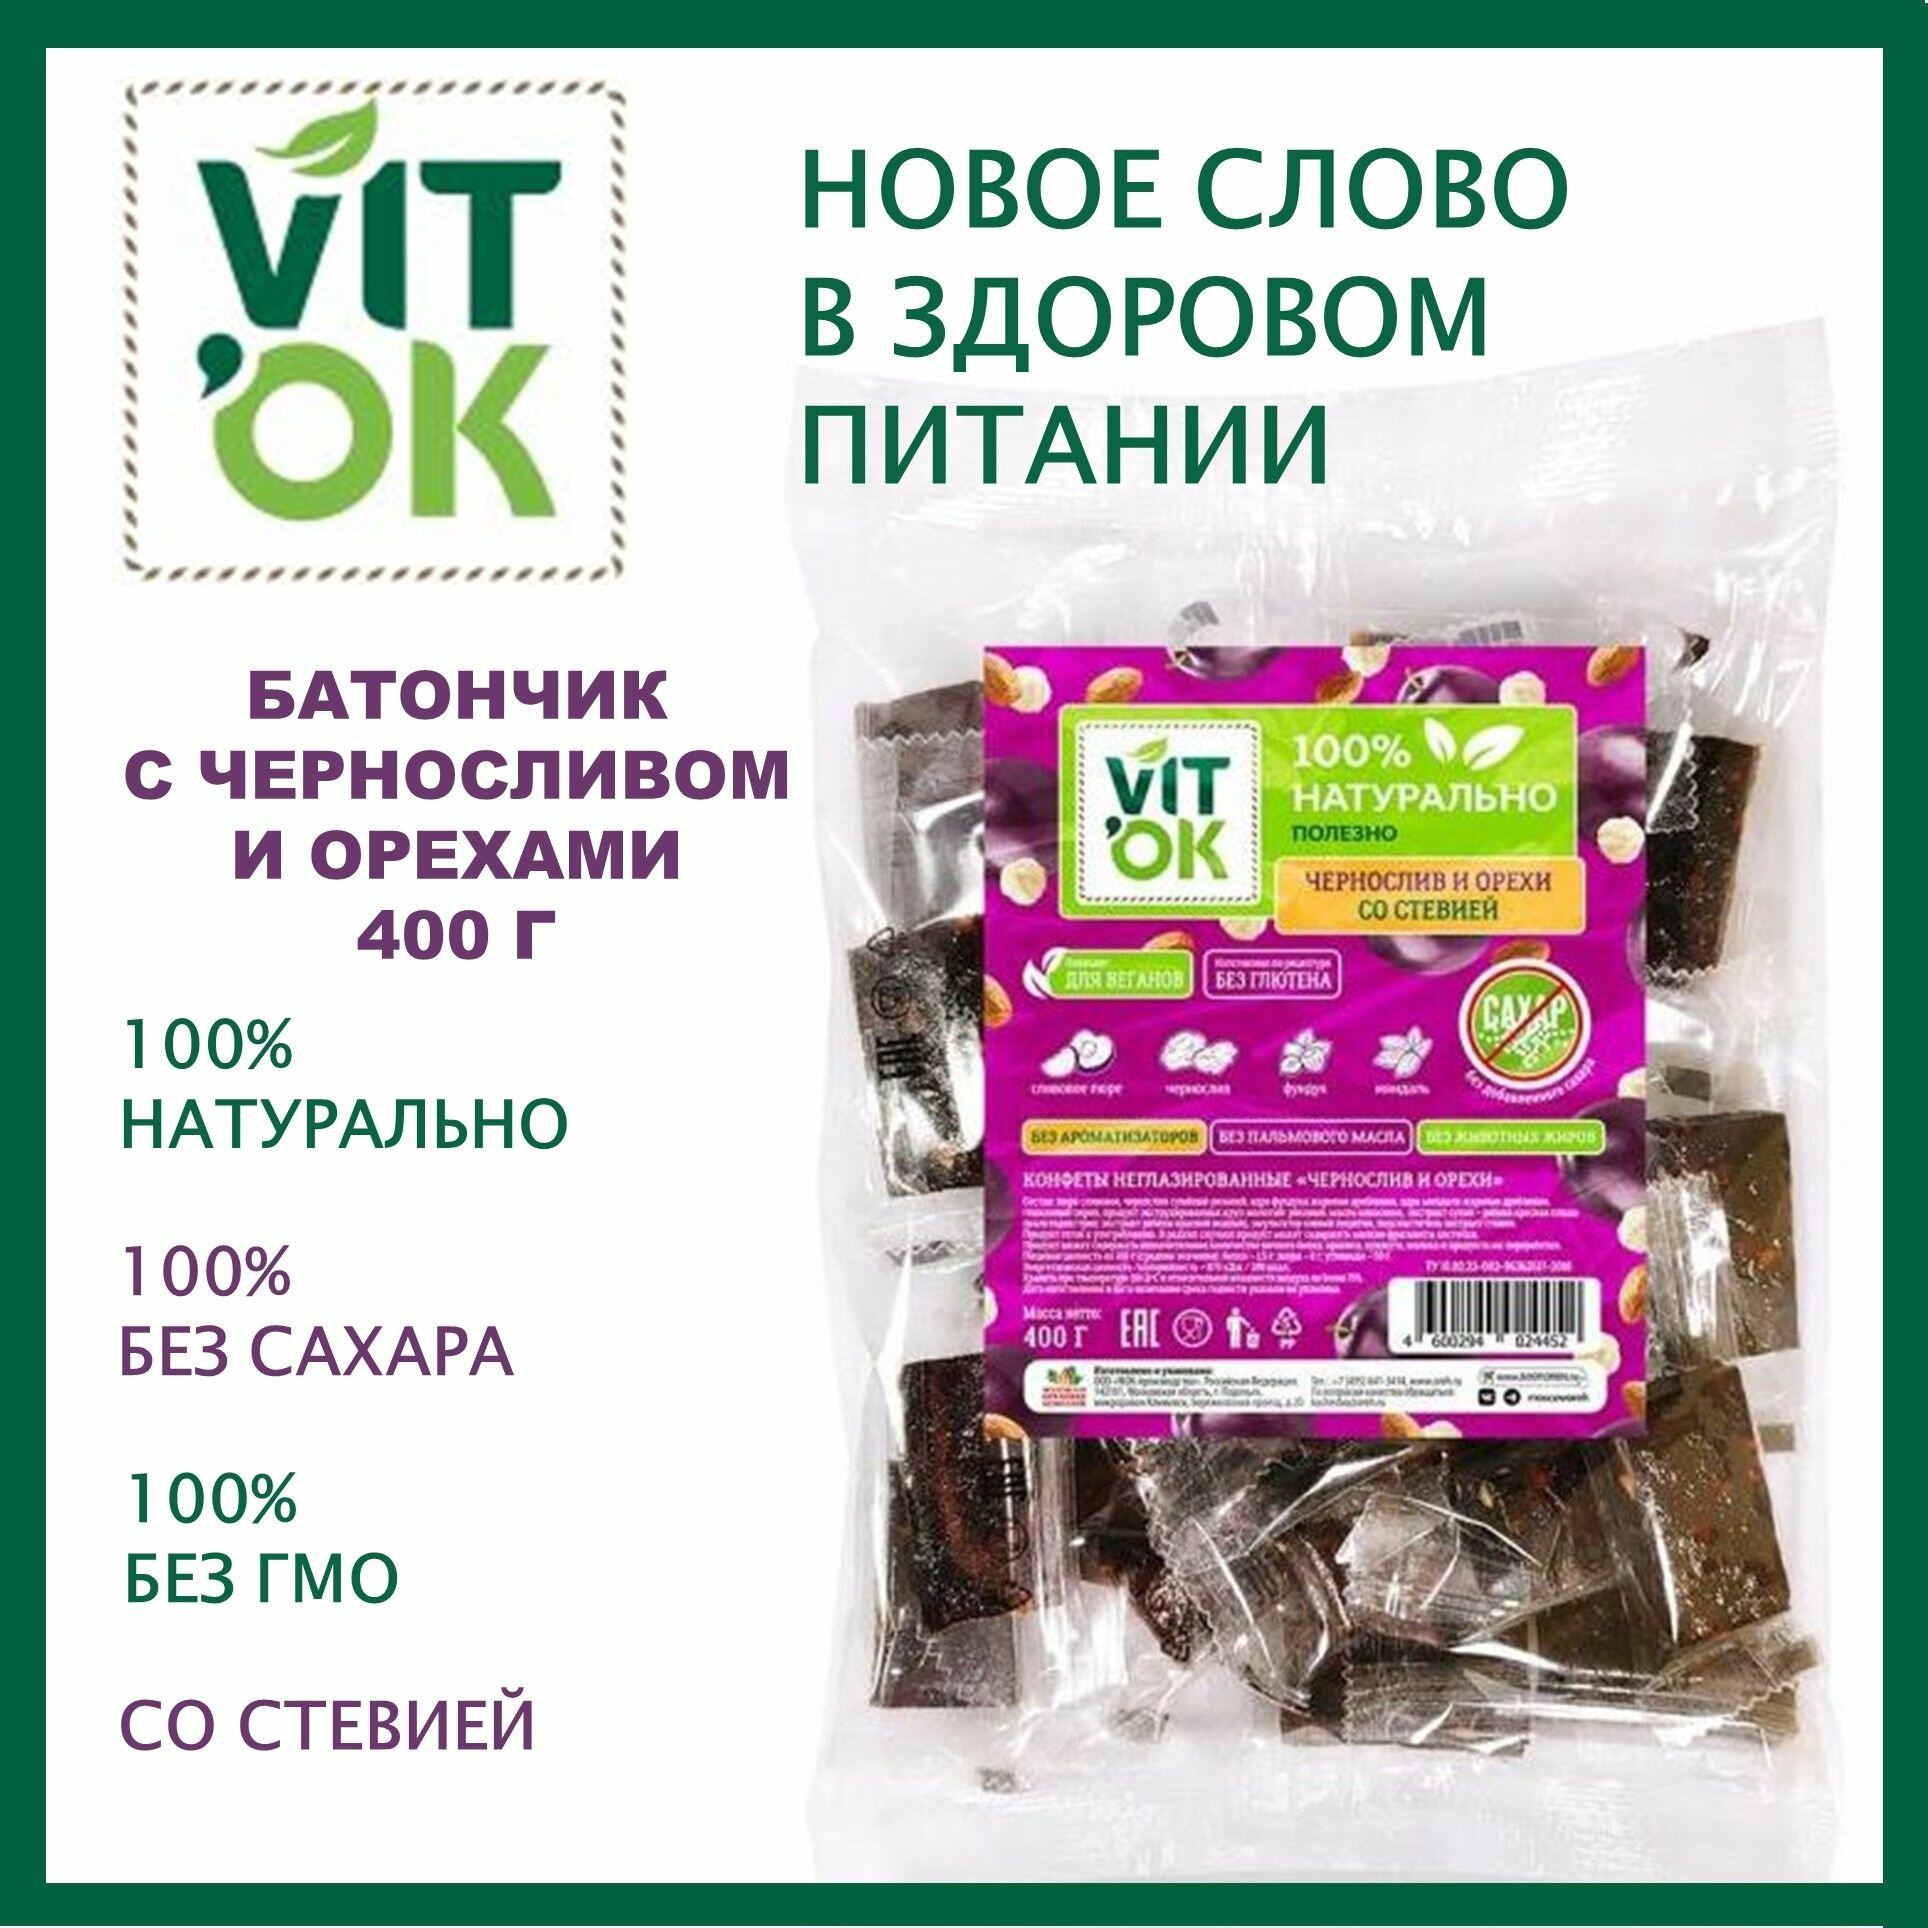 Конфеты VITok 400 г с черносливом и орехами без сахара неглазированные для здорового питания/Московская ореховая компания/Россия